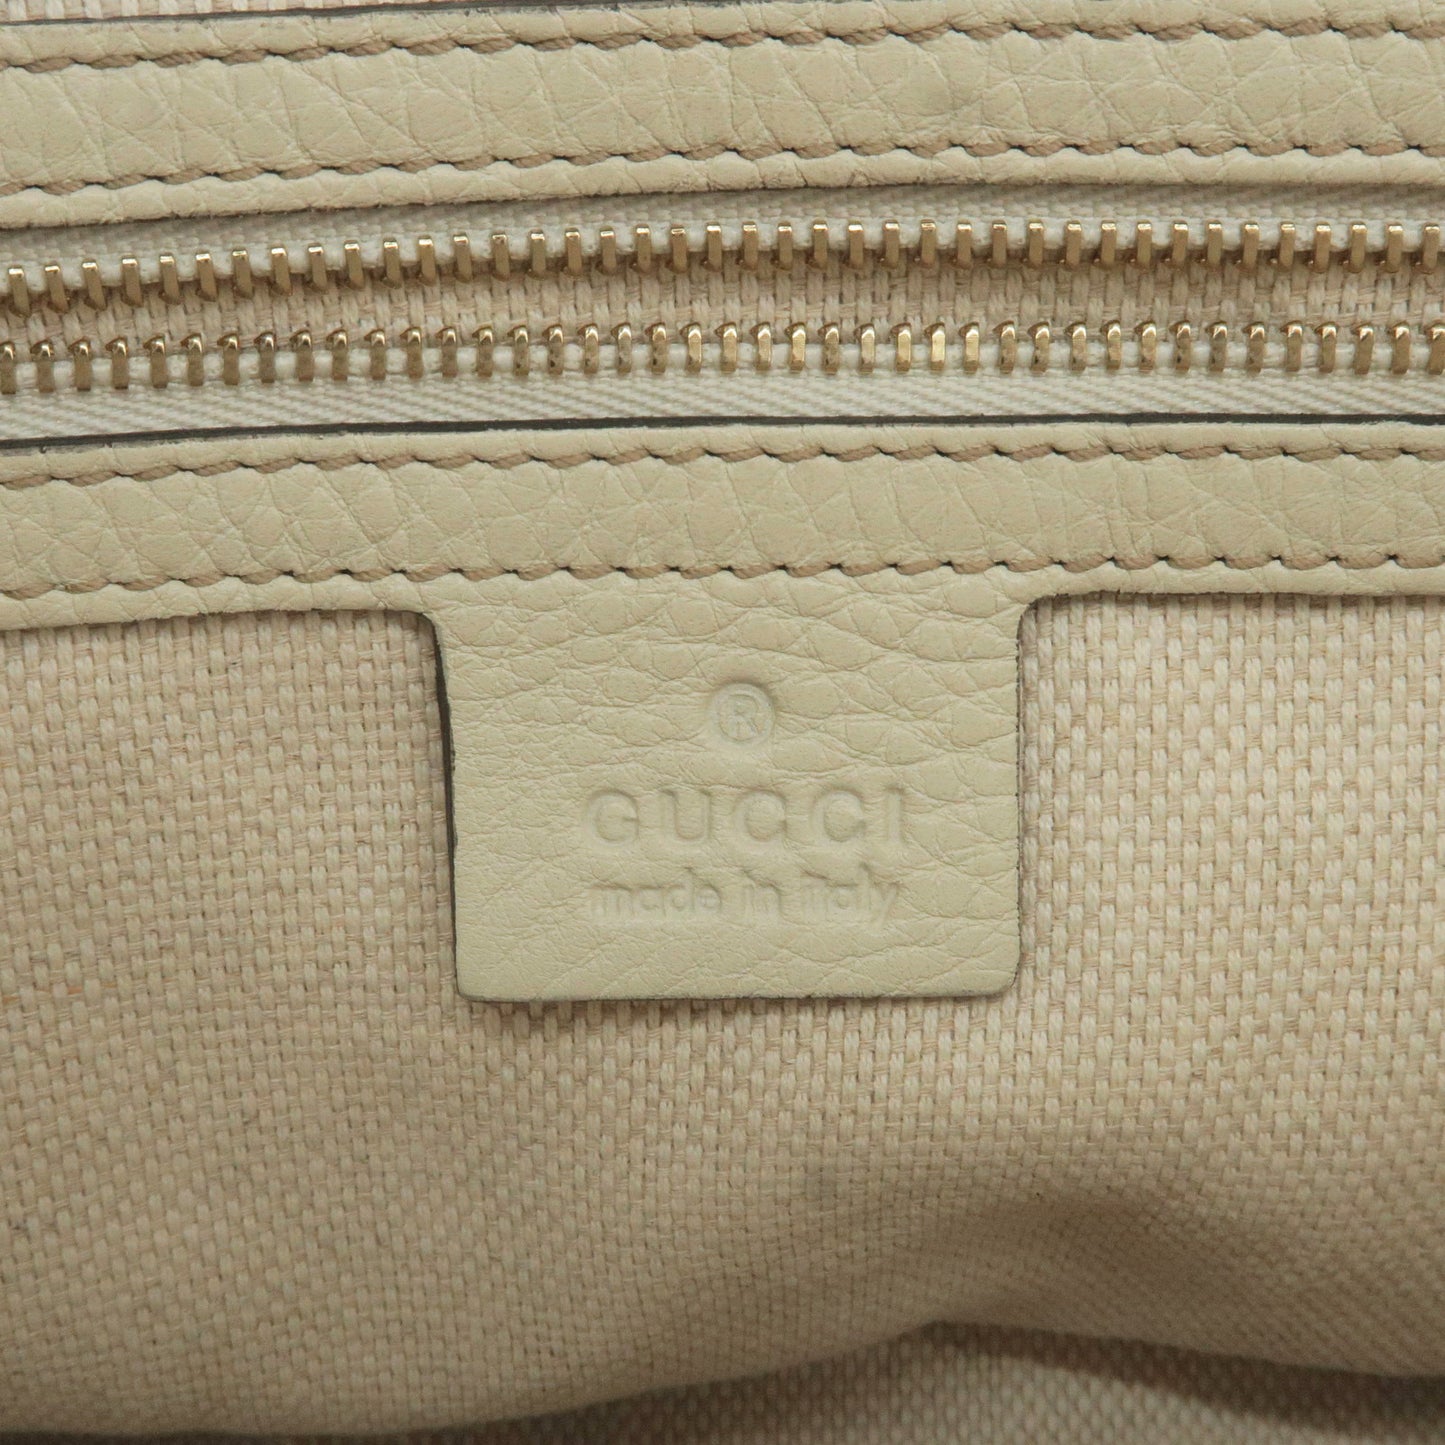 GUCCI SOHO Leather 2 Way Hand Bag Shoulder Bag Ivory 369176